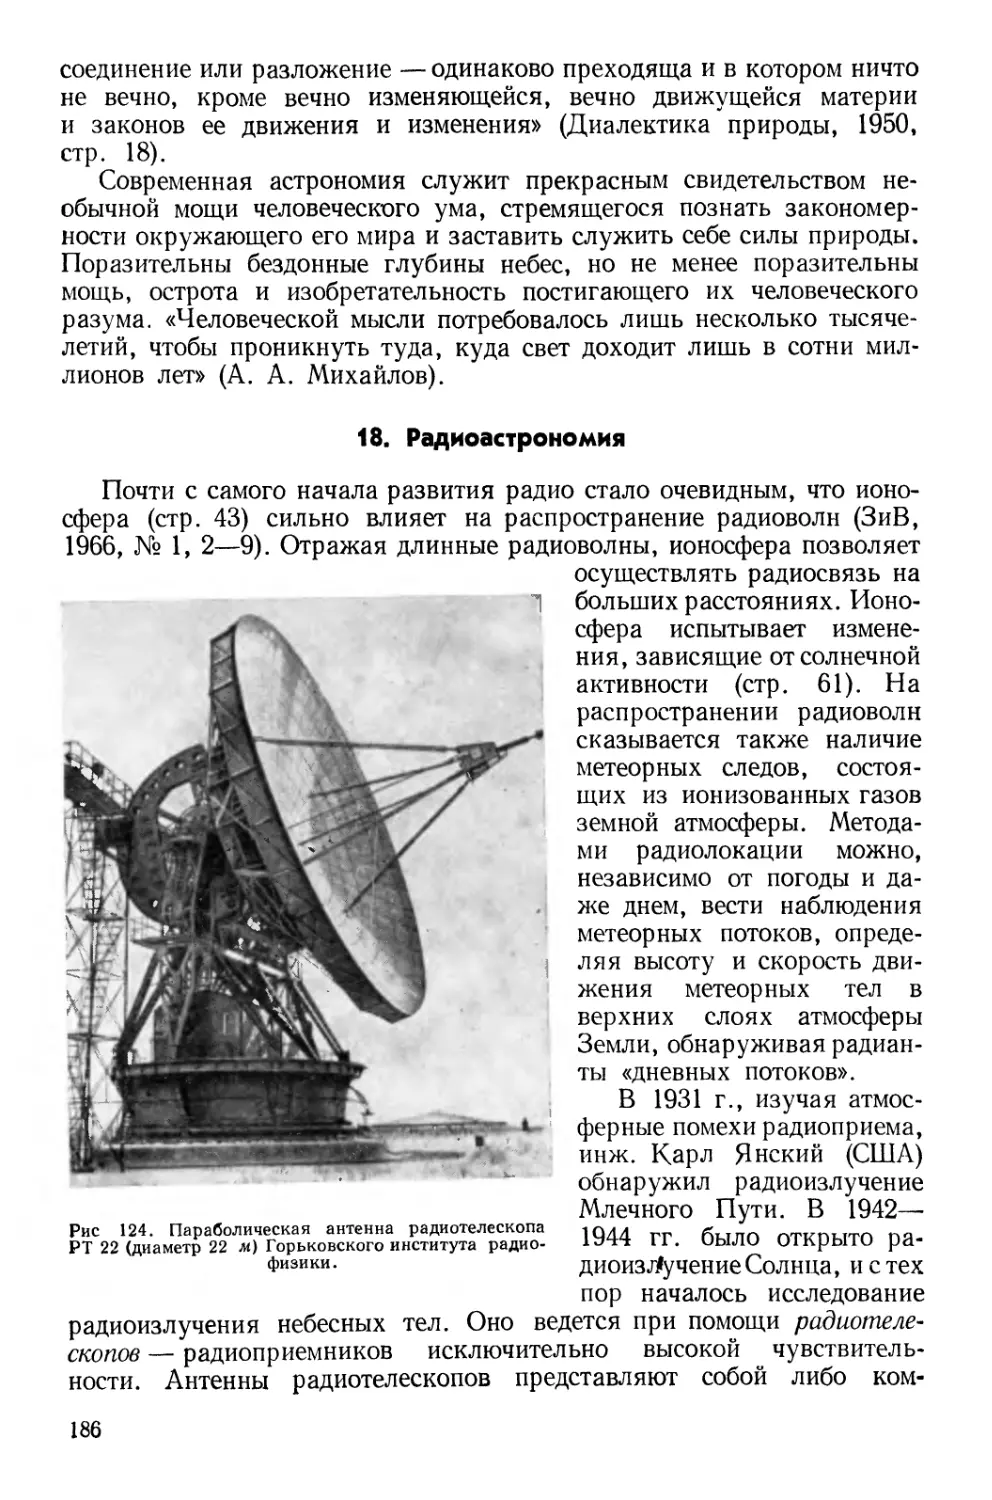 18. Радиоастрономия